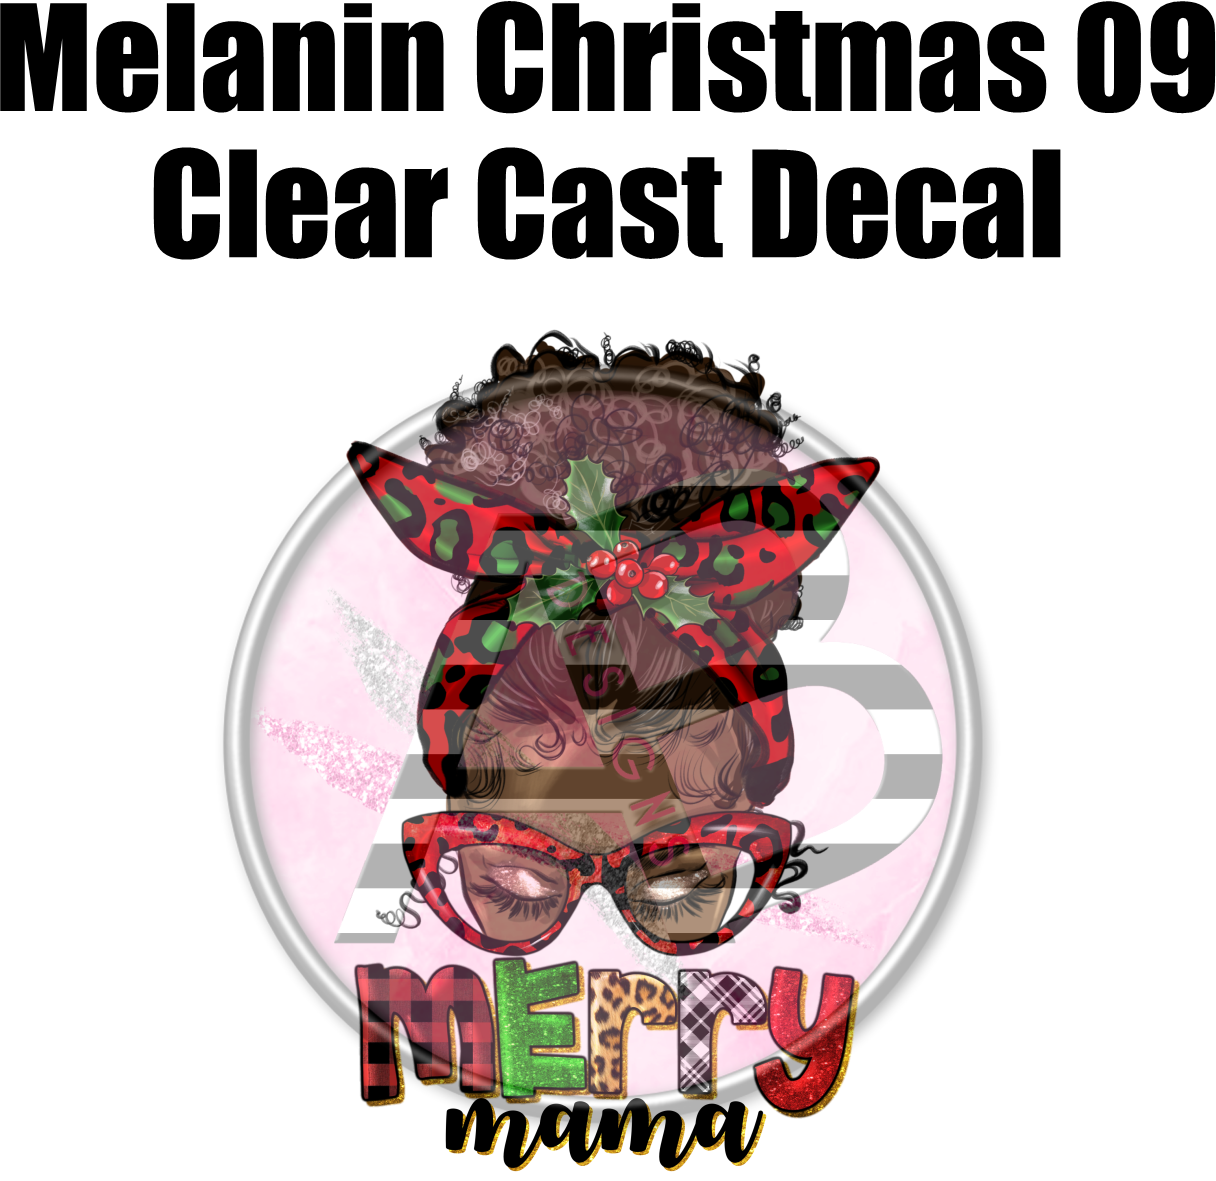 Melanin Christmas 09 - Clear Cast Decal